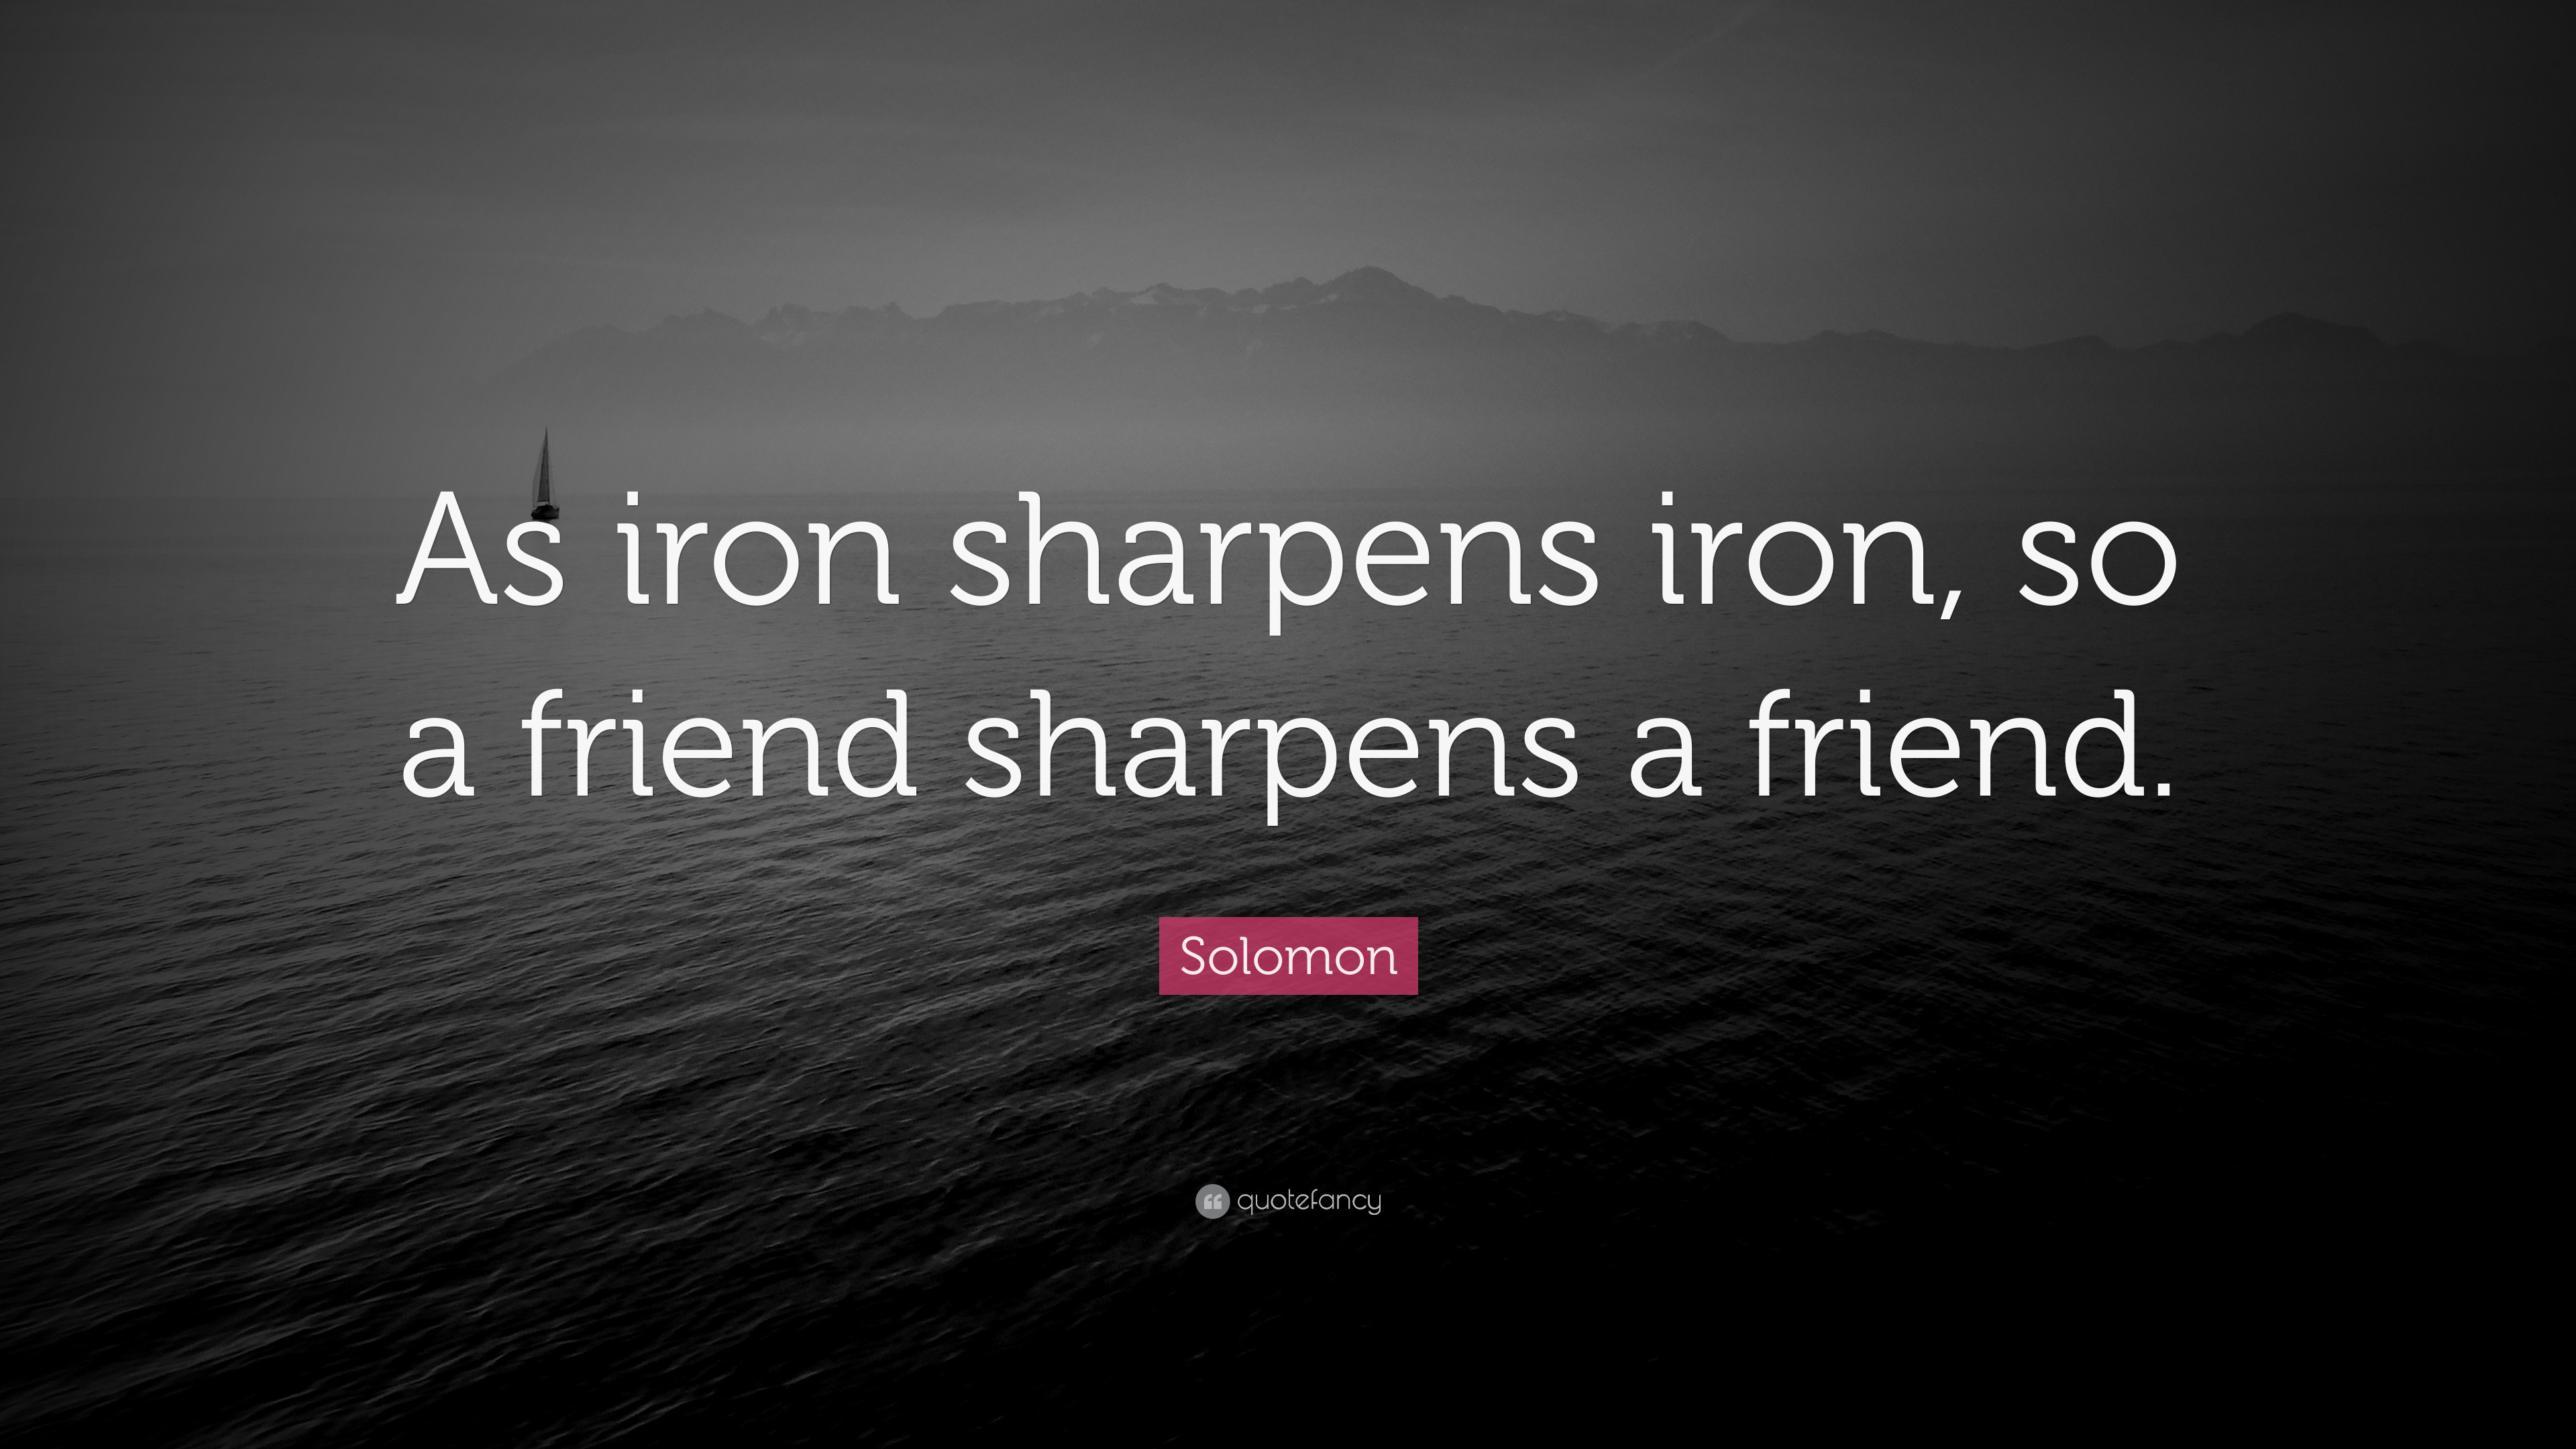 3840x2160 Solomon Quote: “As iron sharpens iron, so a friend sharpens a friend.